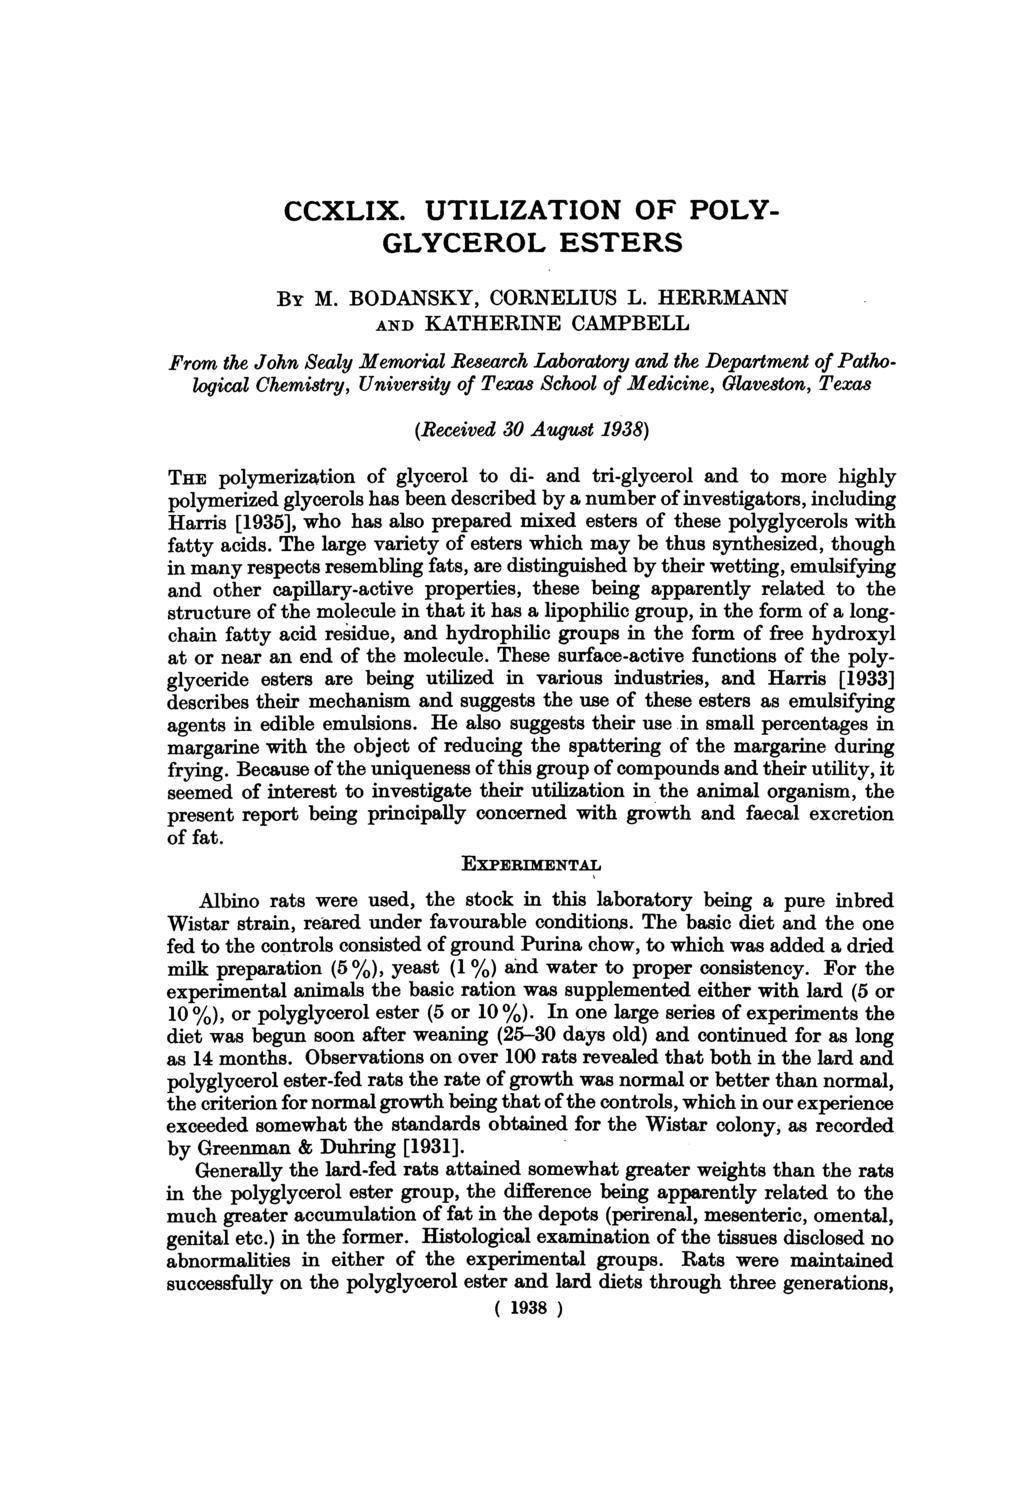 CCXLIX. UTILIZATION OF POLY- GLYCEROL ESTERS BY M. BODANSKY, CORNELIUS L.